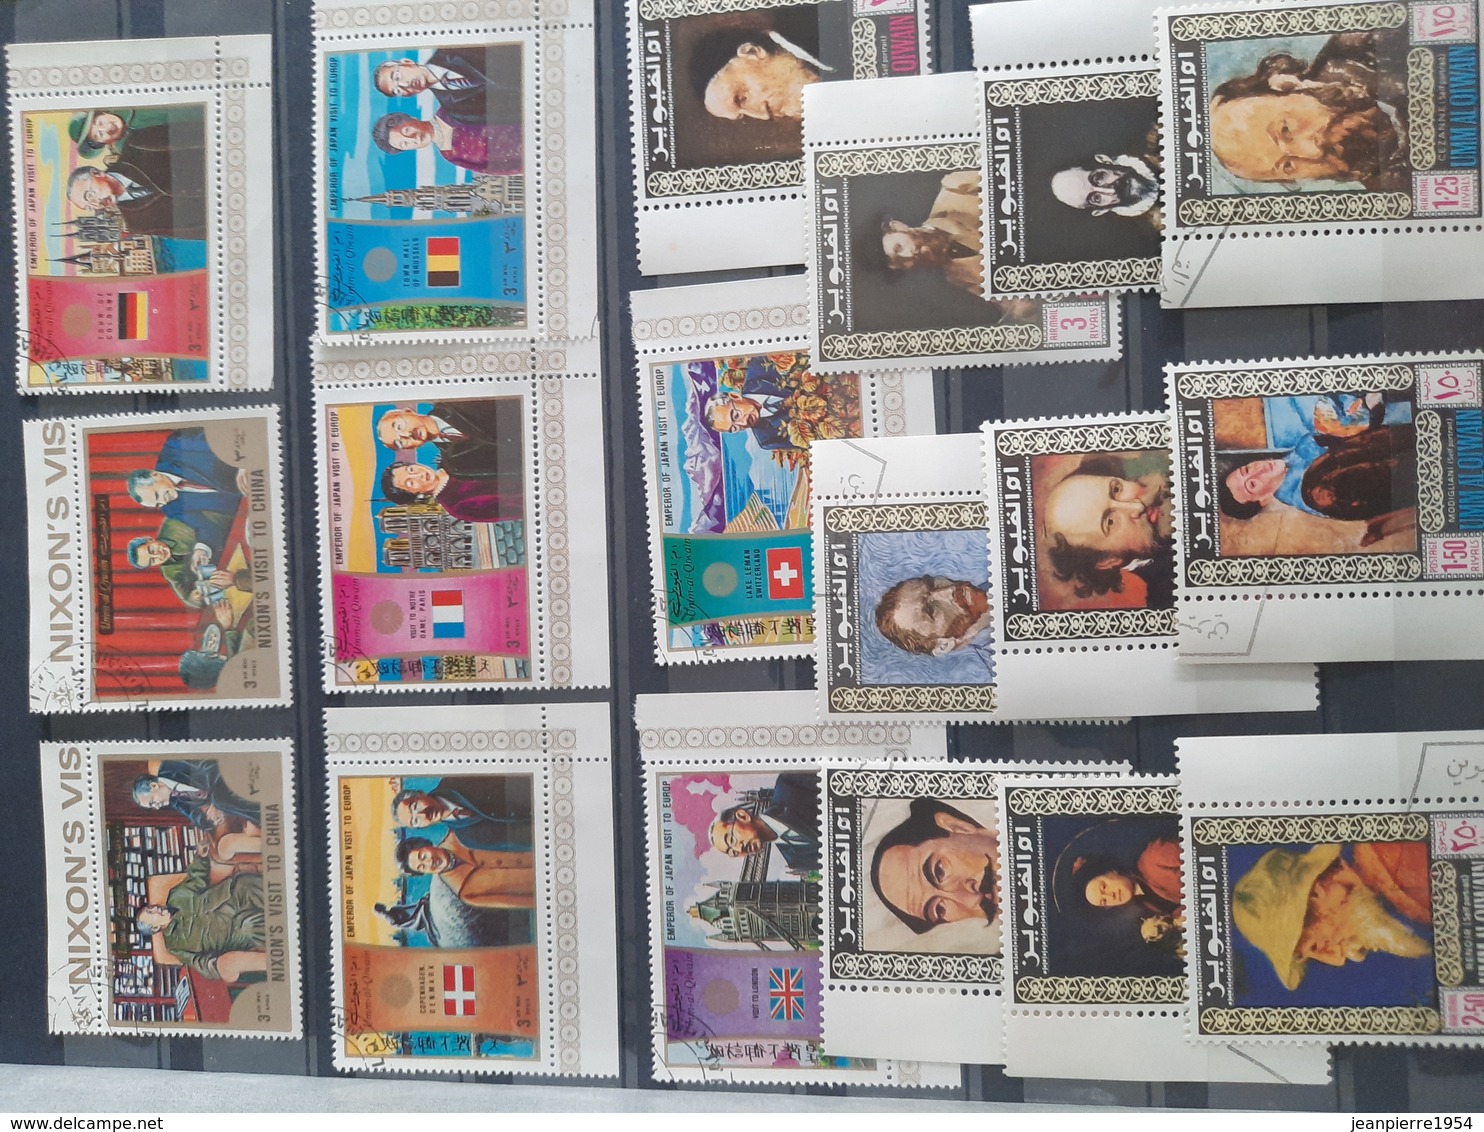 timbres du monde (avec monaco neuf